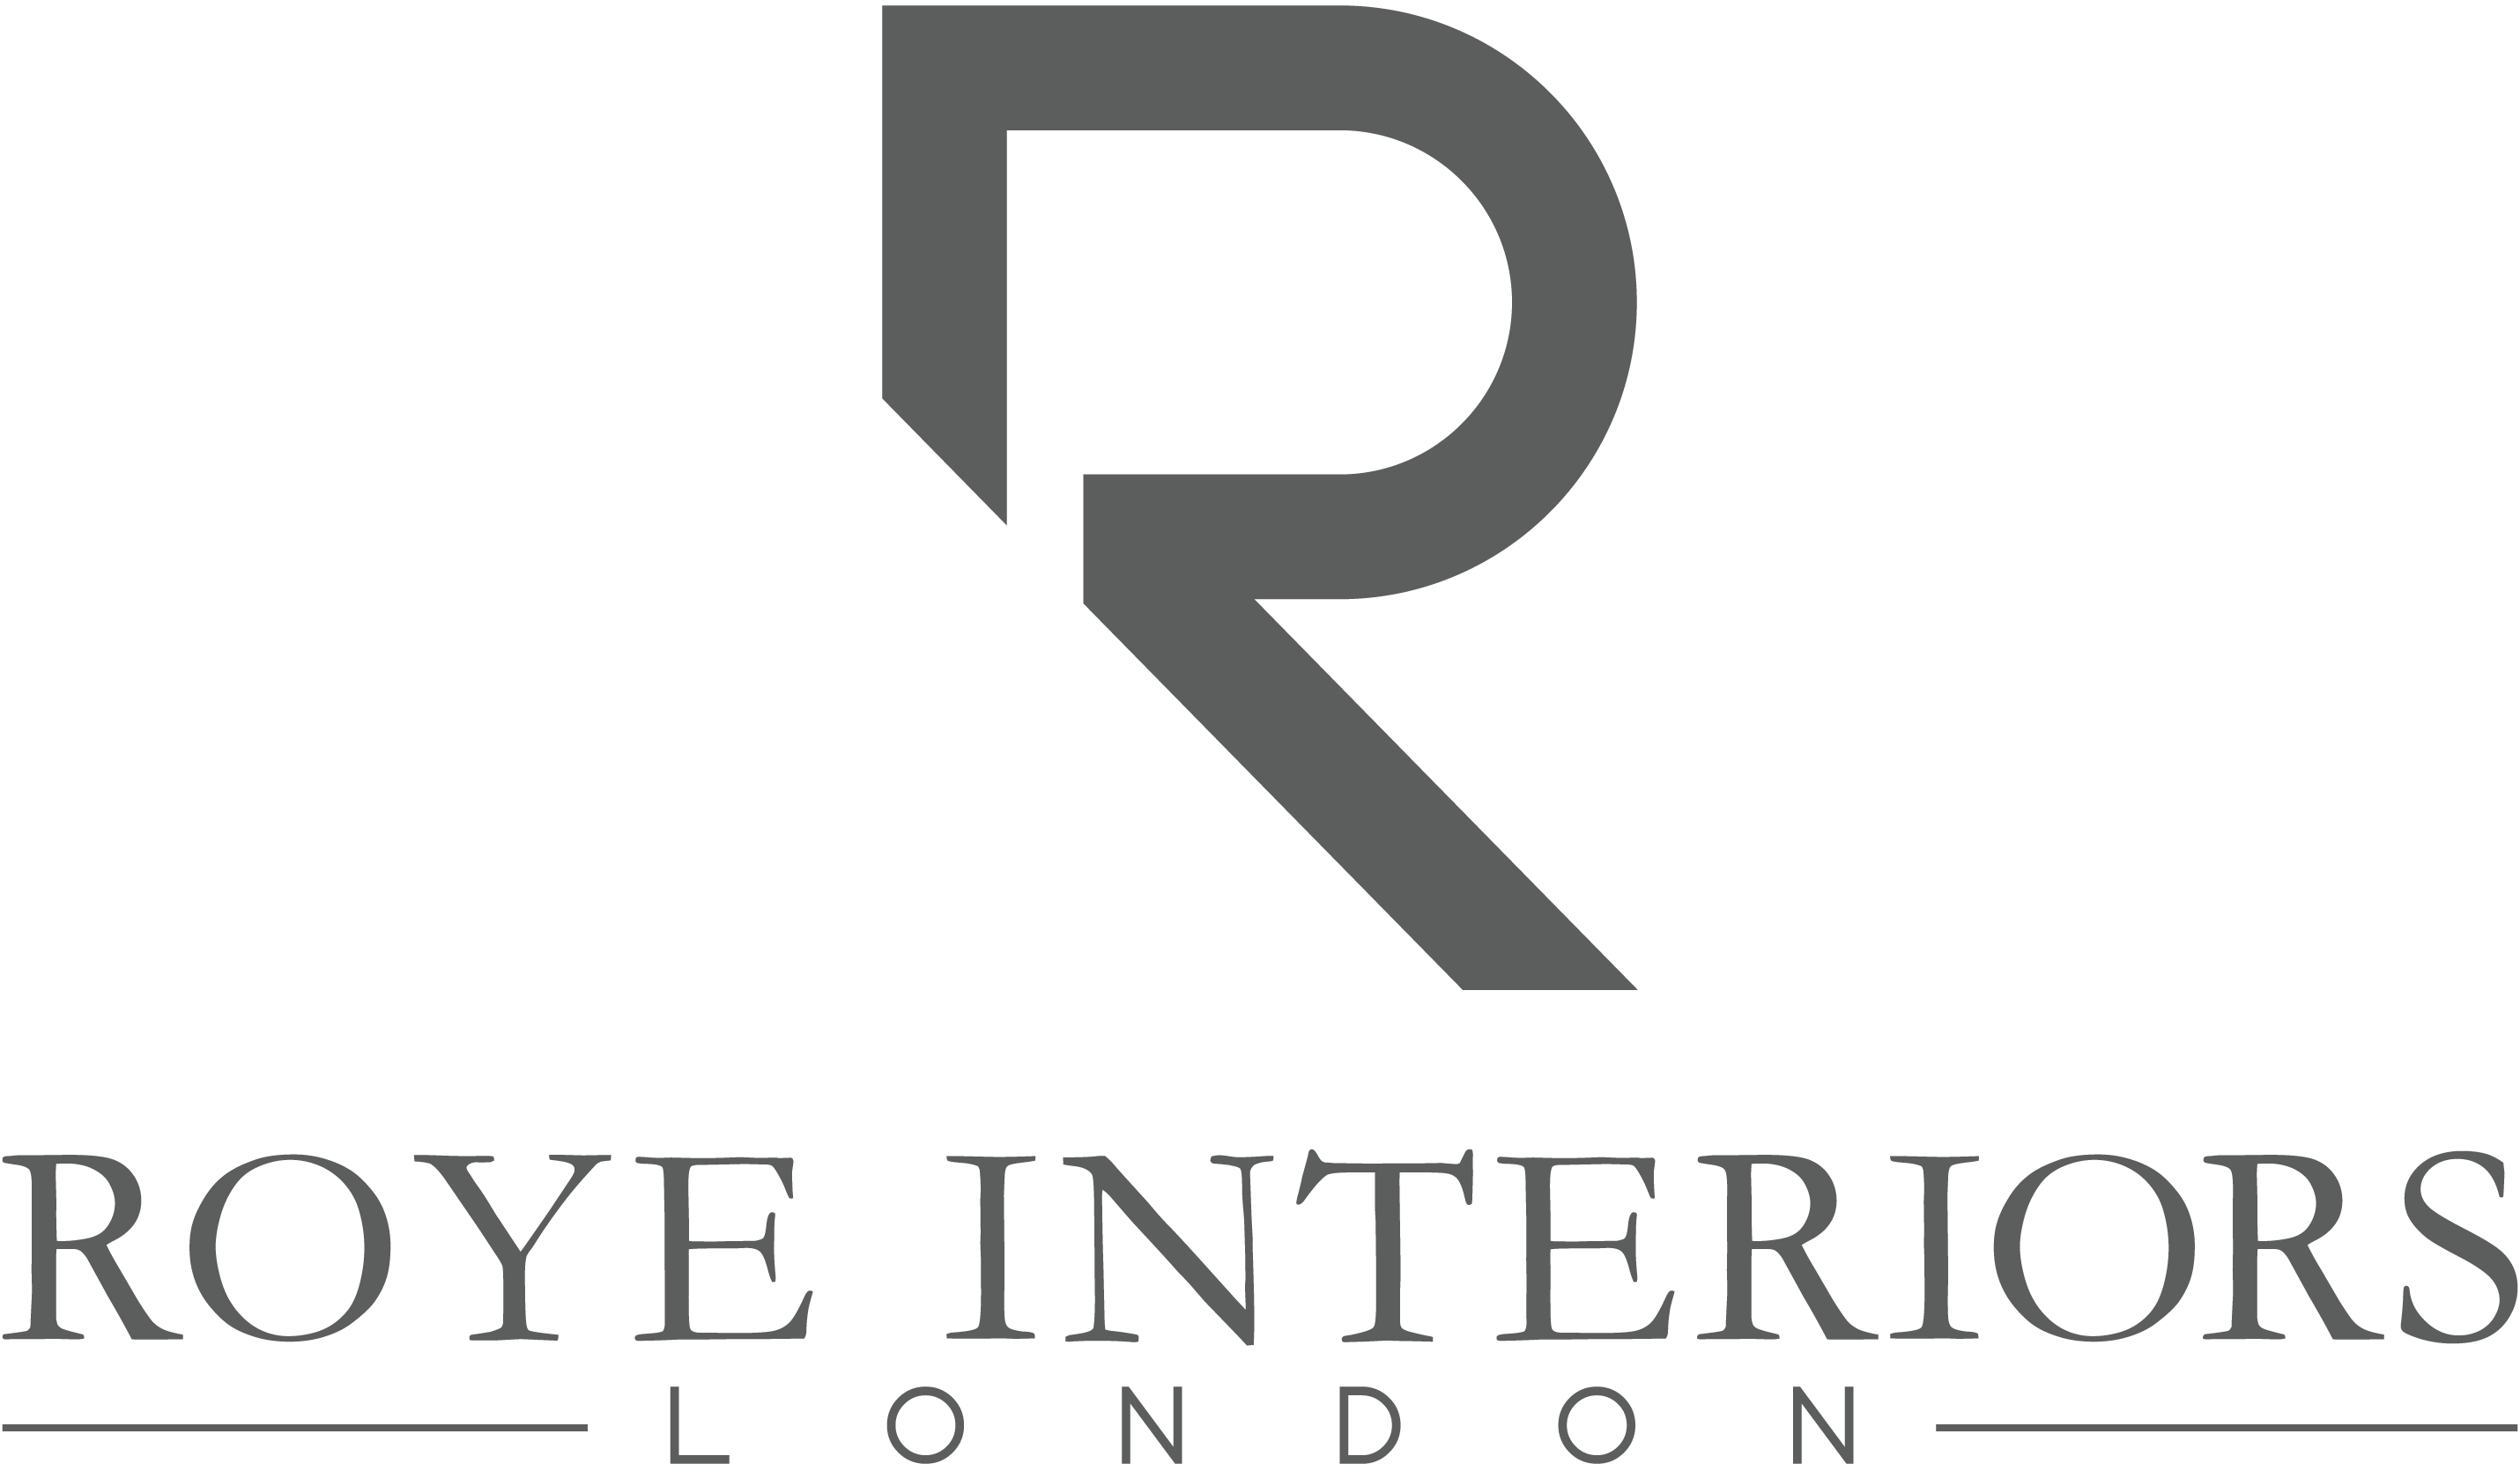 Roye Interiors London